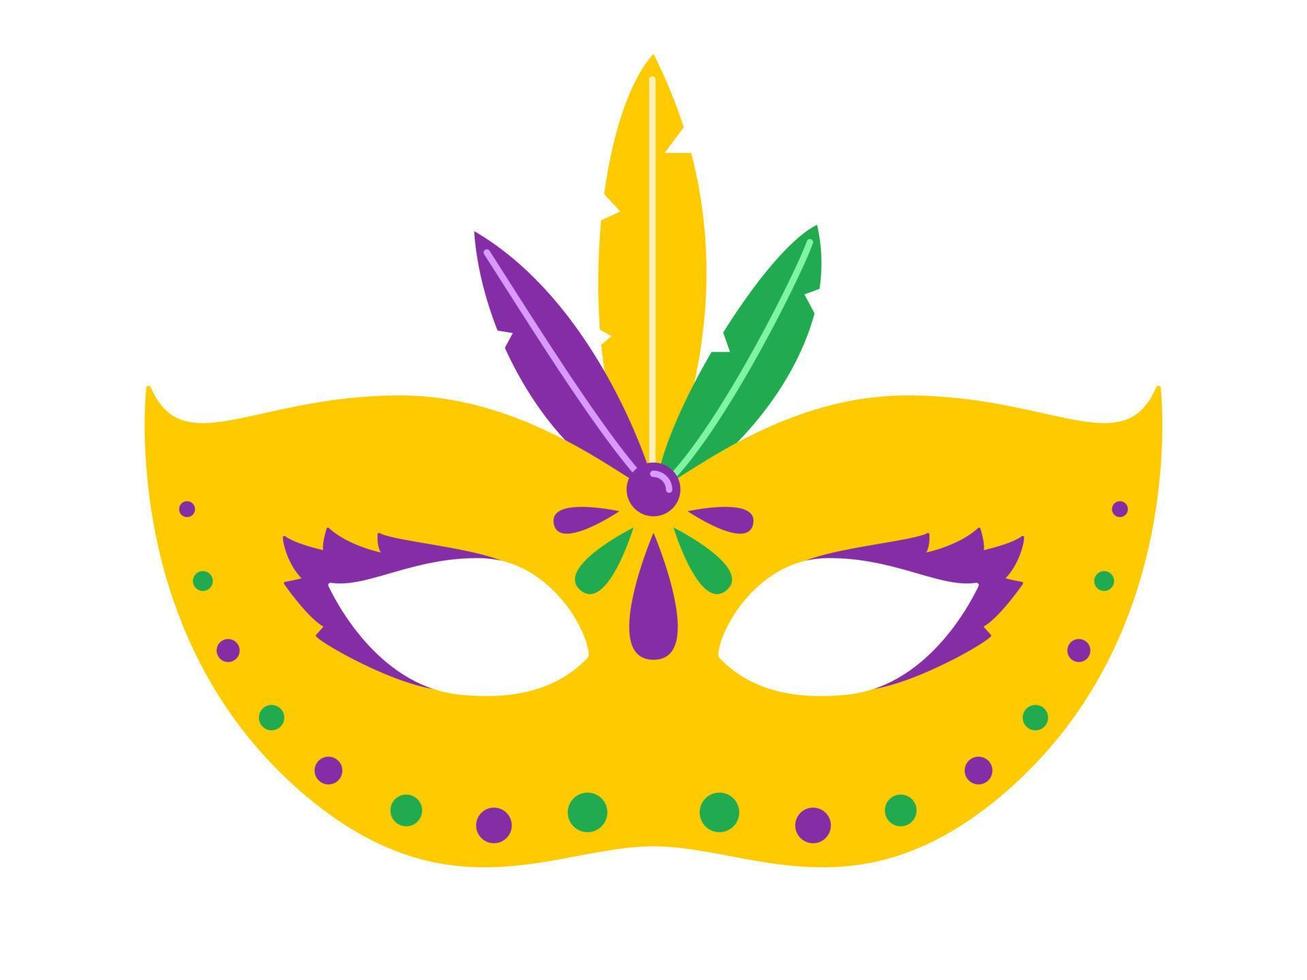 Vektor gelbe Karnevalsmaske. Karnevalsmaske mit Federn. Design für den fetten Dienstag. bunte maskeradeillustration. Karnevalsmaske für traditionelle Feiertage oder Feste.